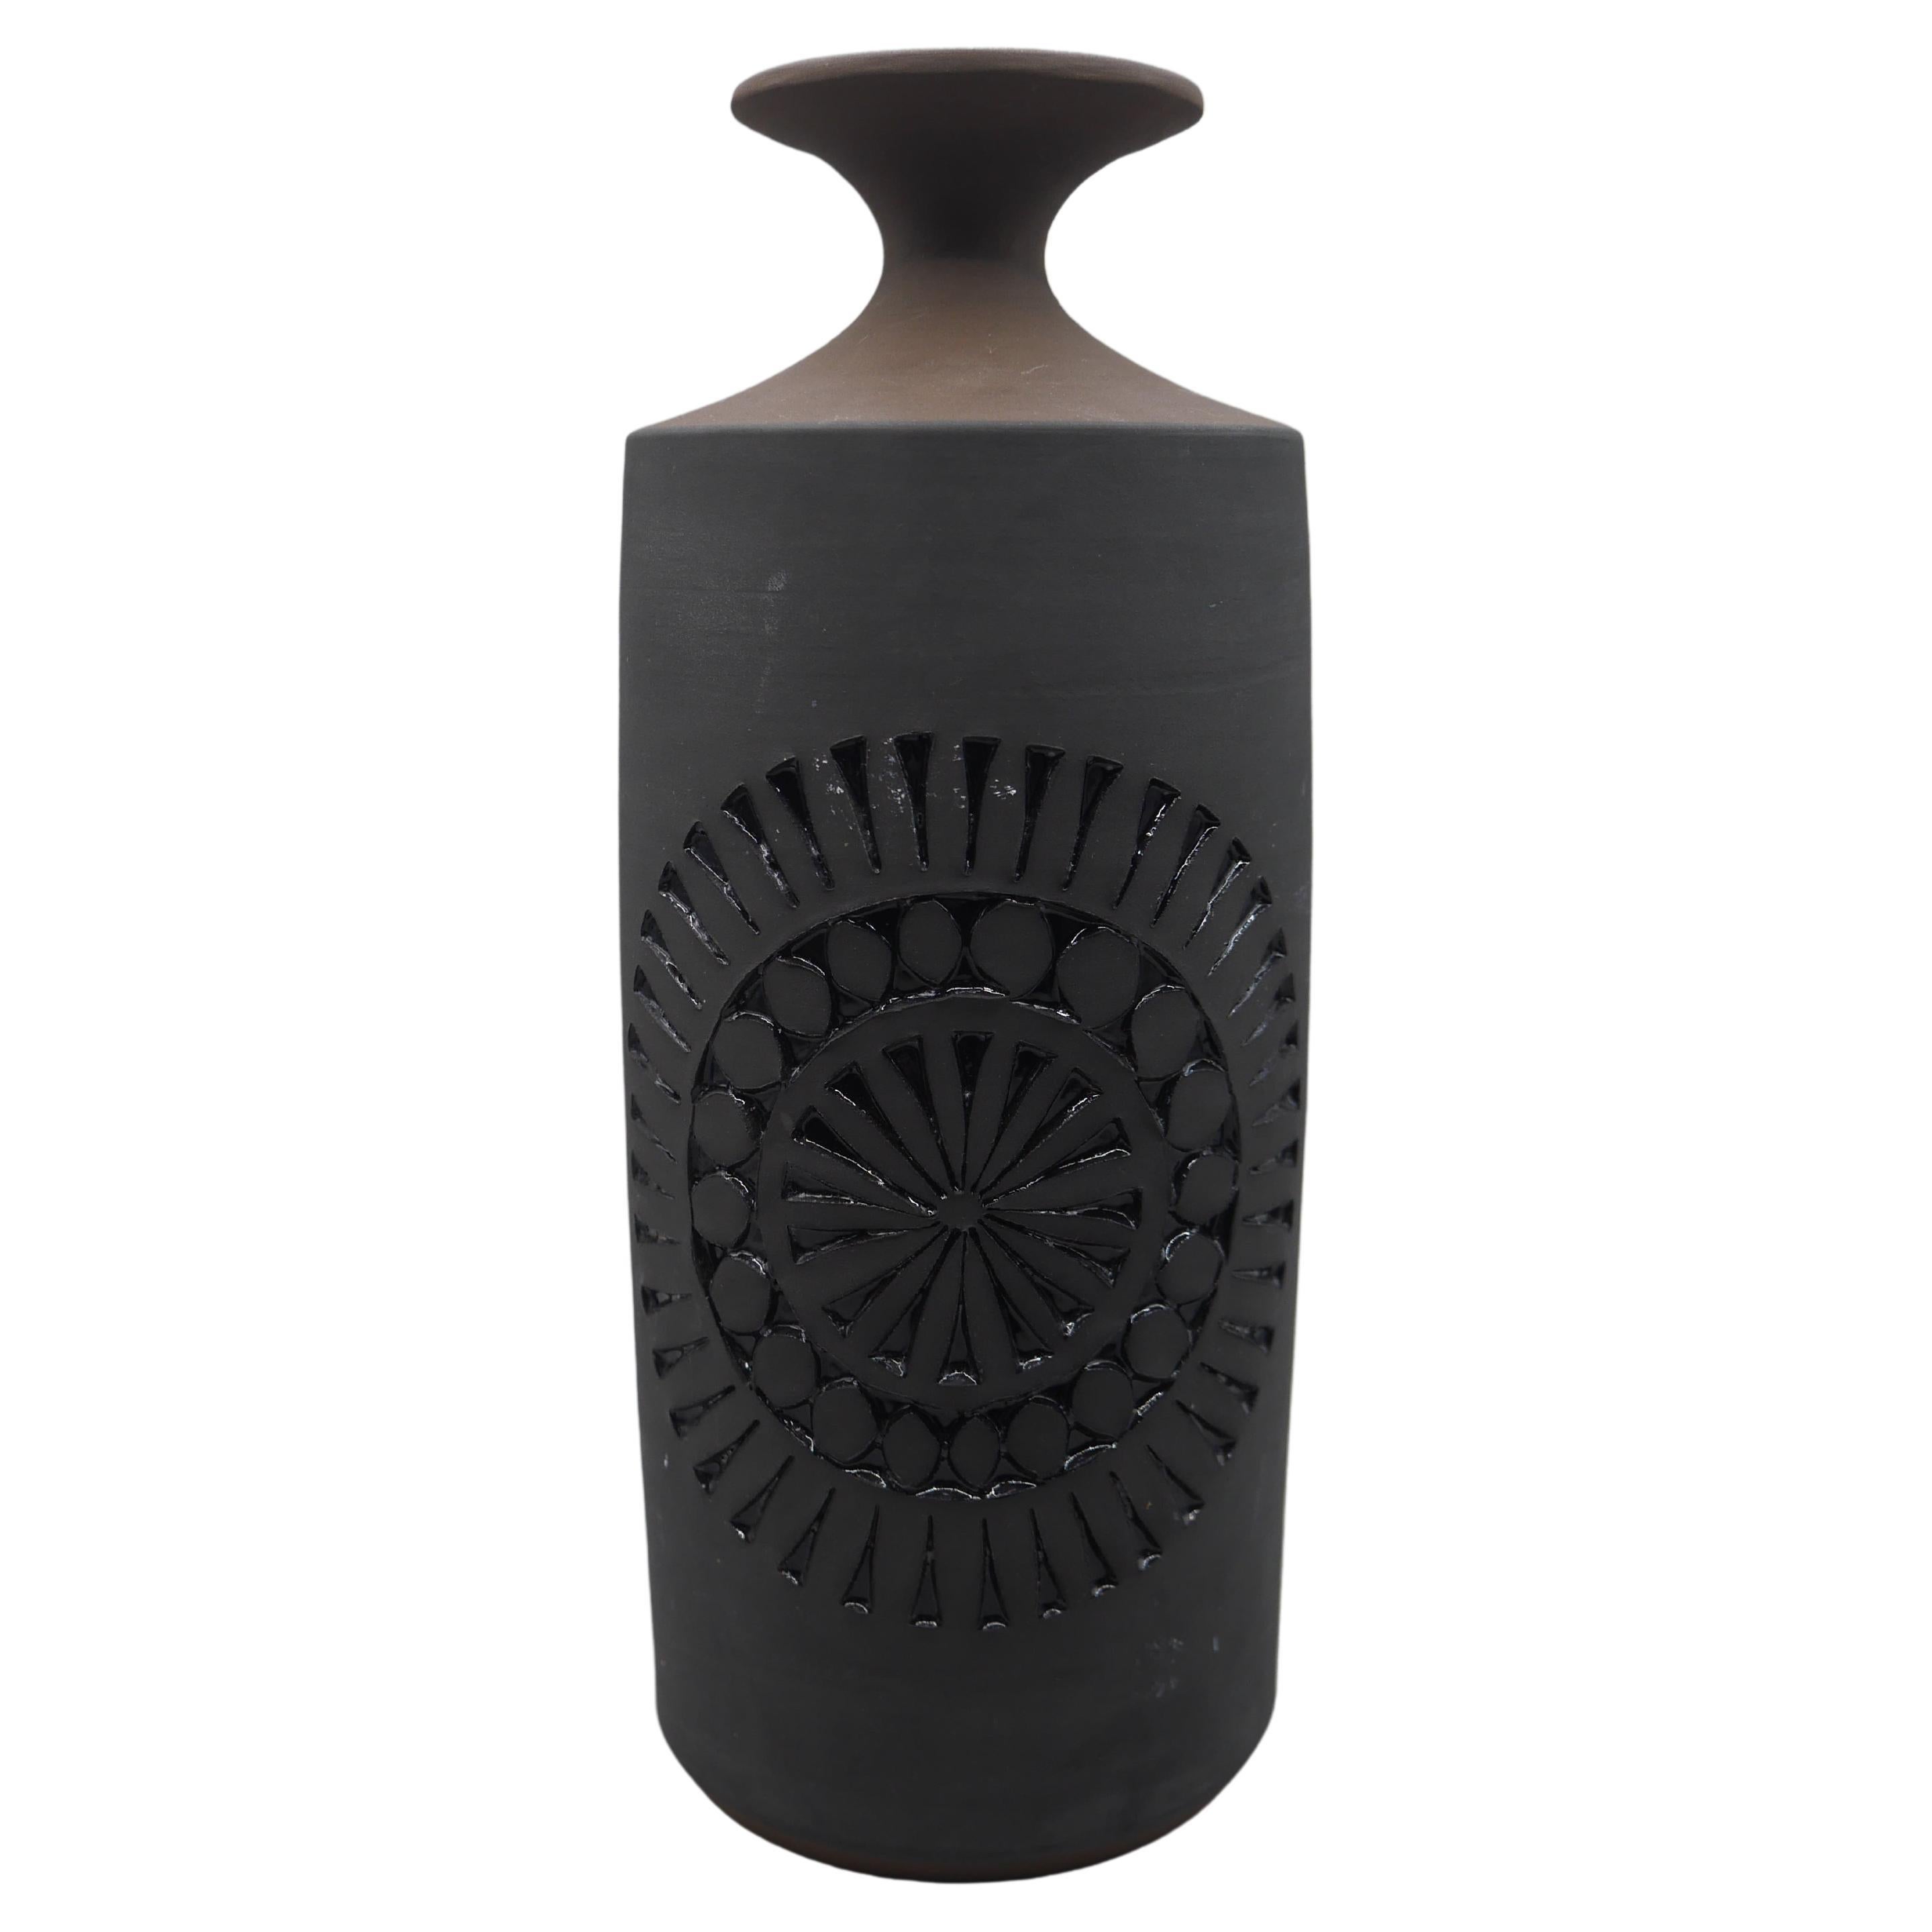 1960s, Vase from Alingsås, Sweden